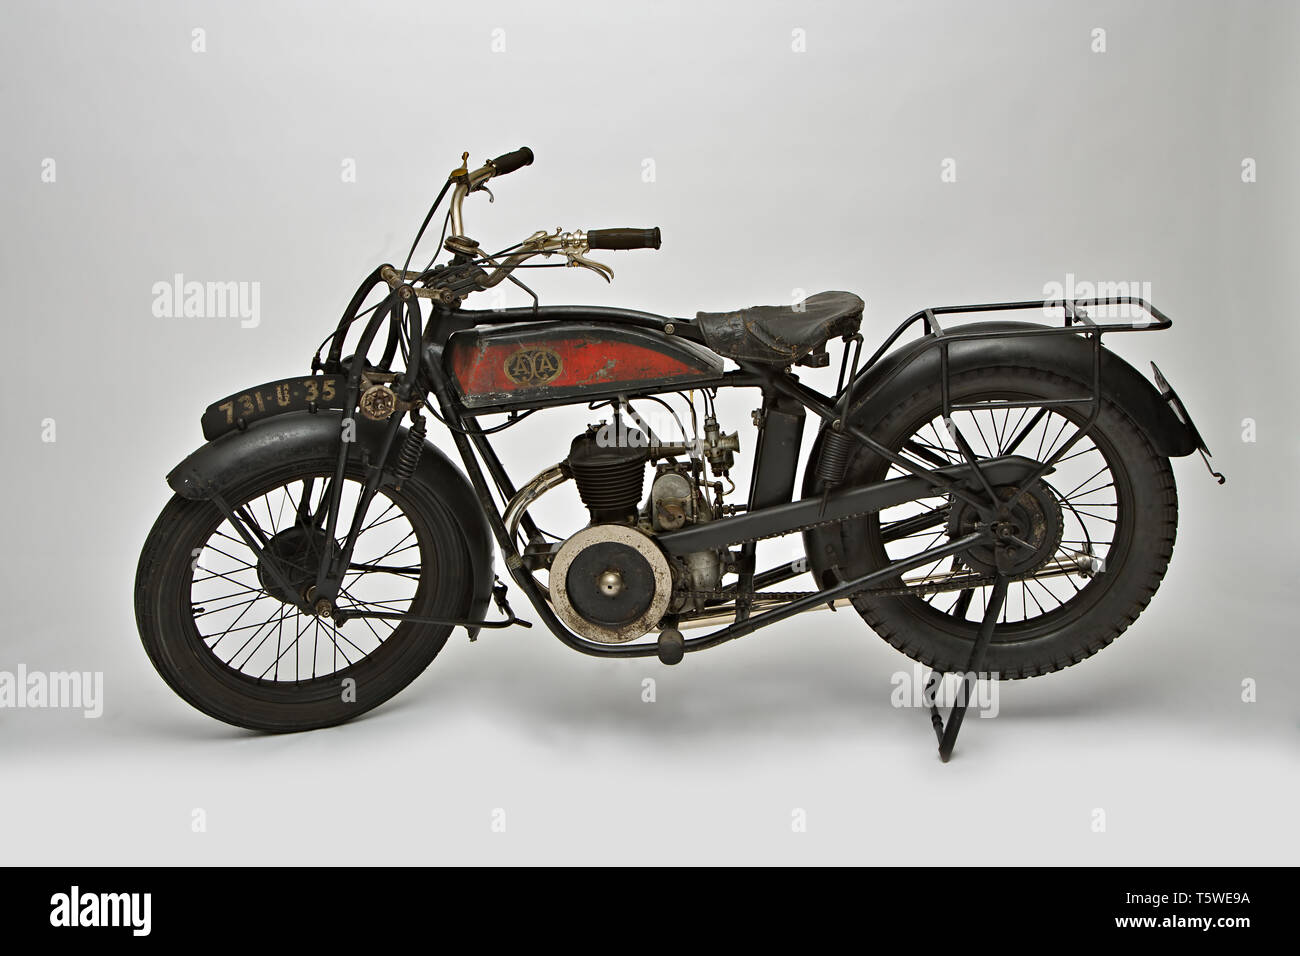 Moto d'epoca Marca Axa Axa Axa modello : ? Nazione : Francia anno : 1927 conditions : conservata cilindrata : 350 ? Motore : Monocilindrico Banque D'Images